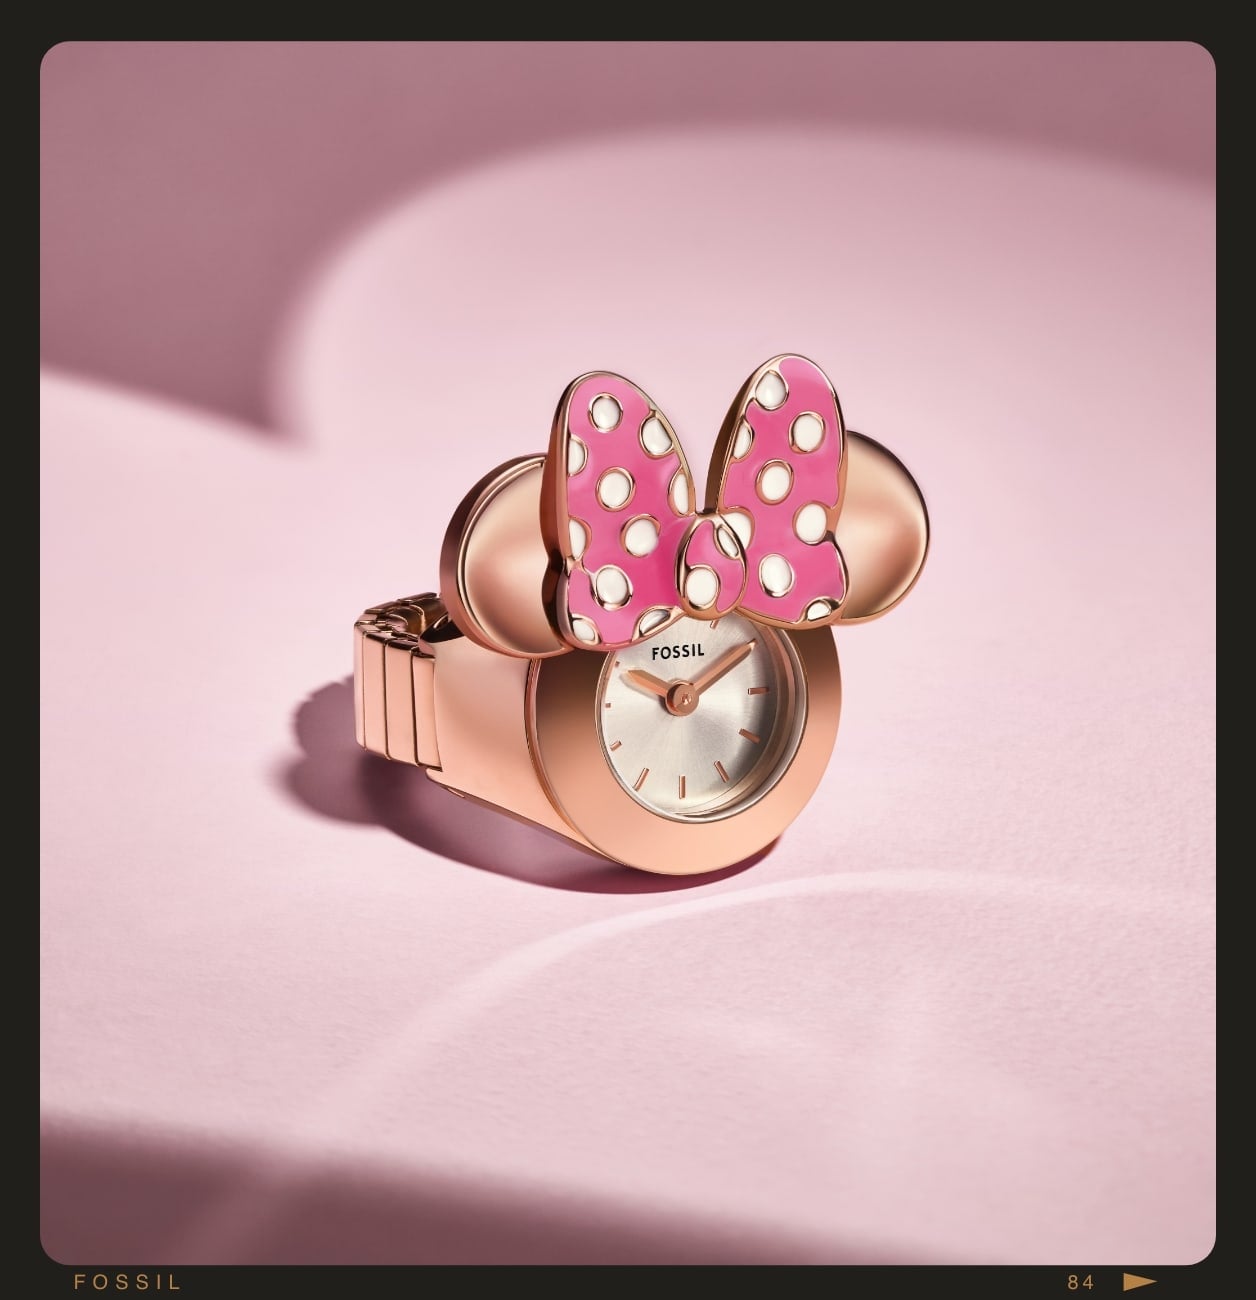 Anillo de reloj de Minnie Mouse de Disney en tono oro rosa con orejas de ratón y un lazo de lunares.